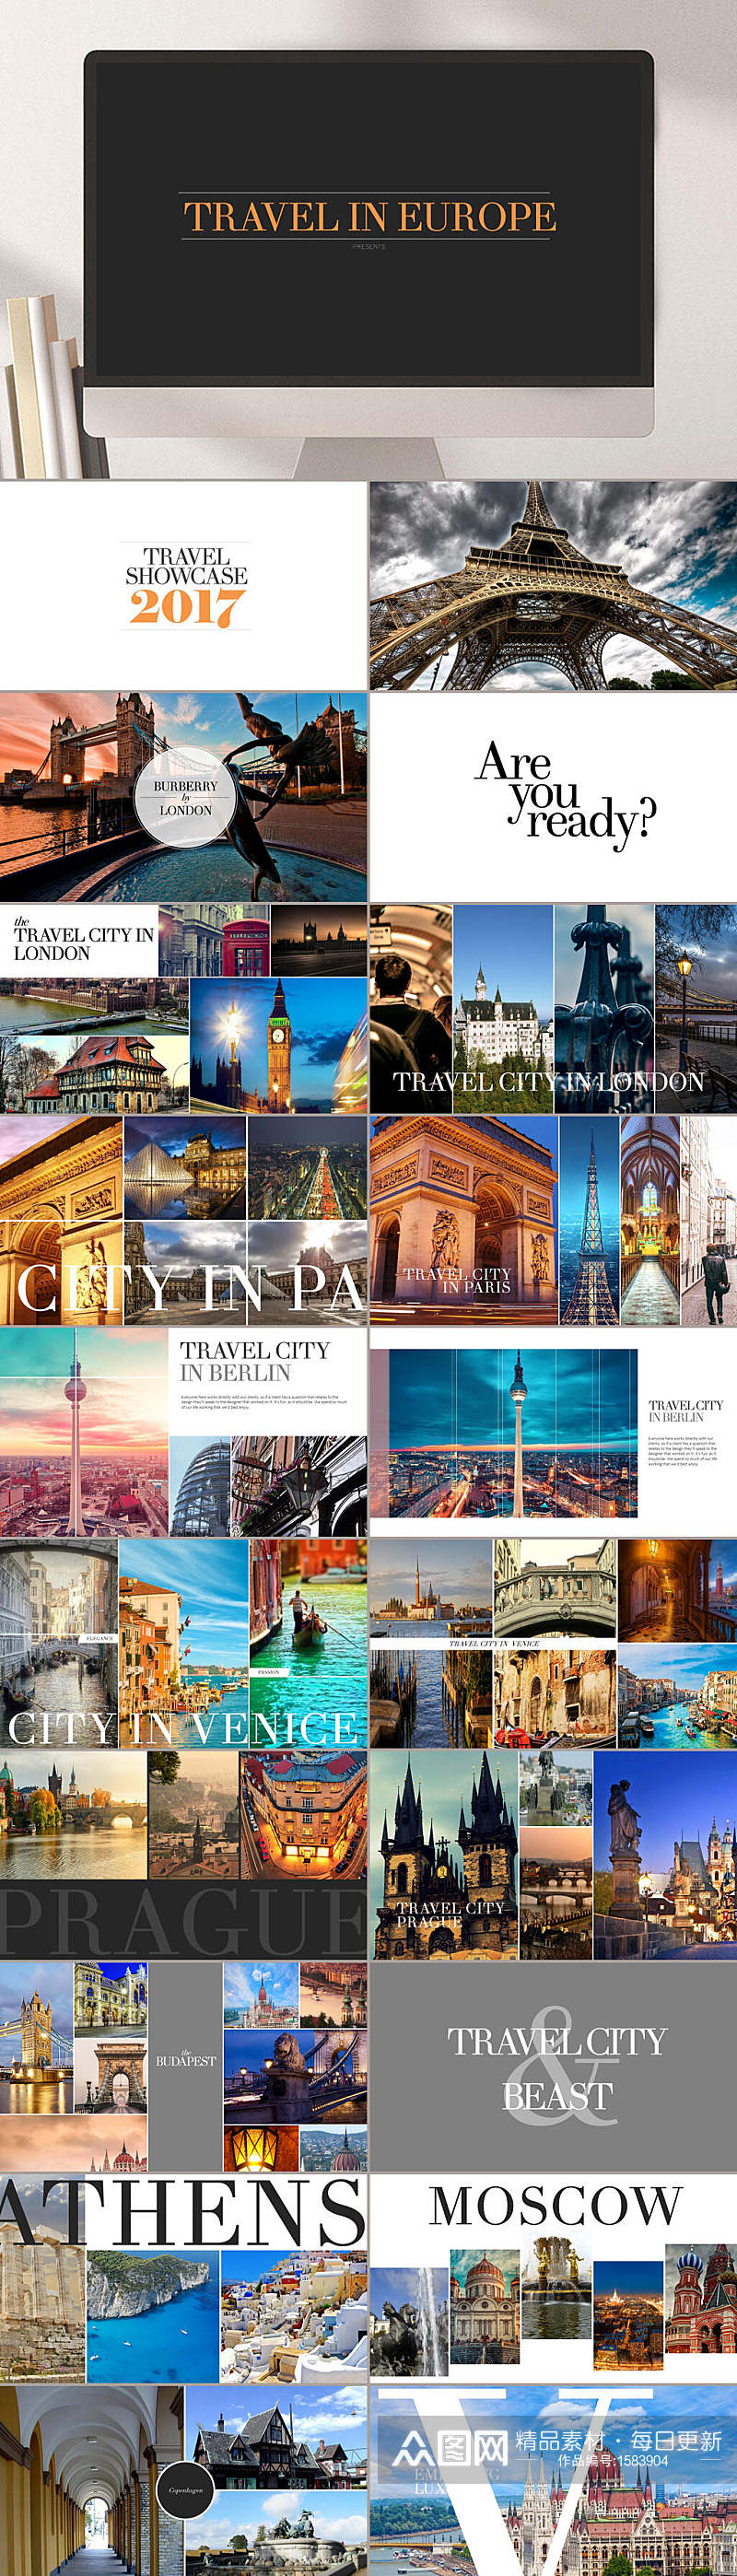 欧洲旅游游记摄影相册PPT模板素材